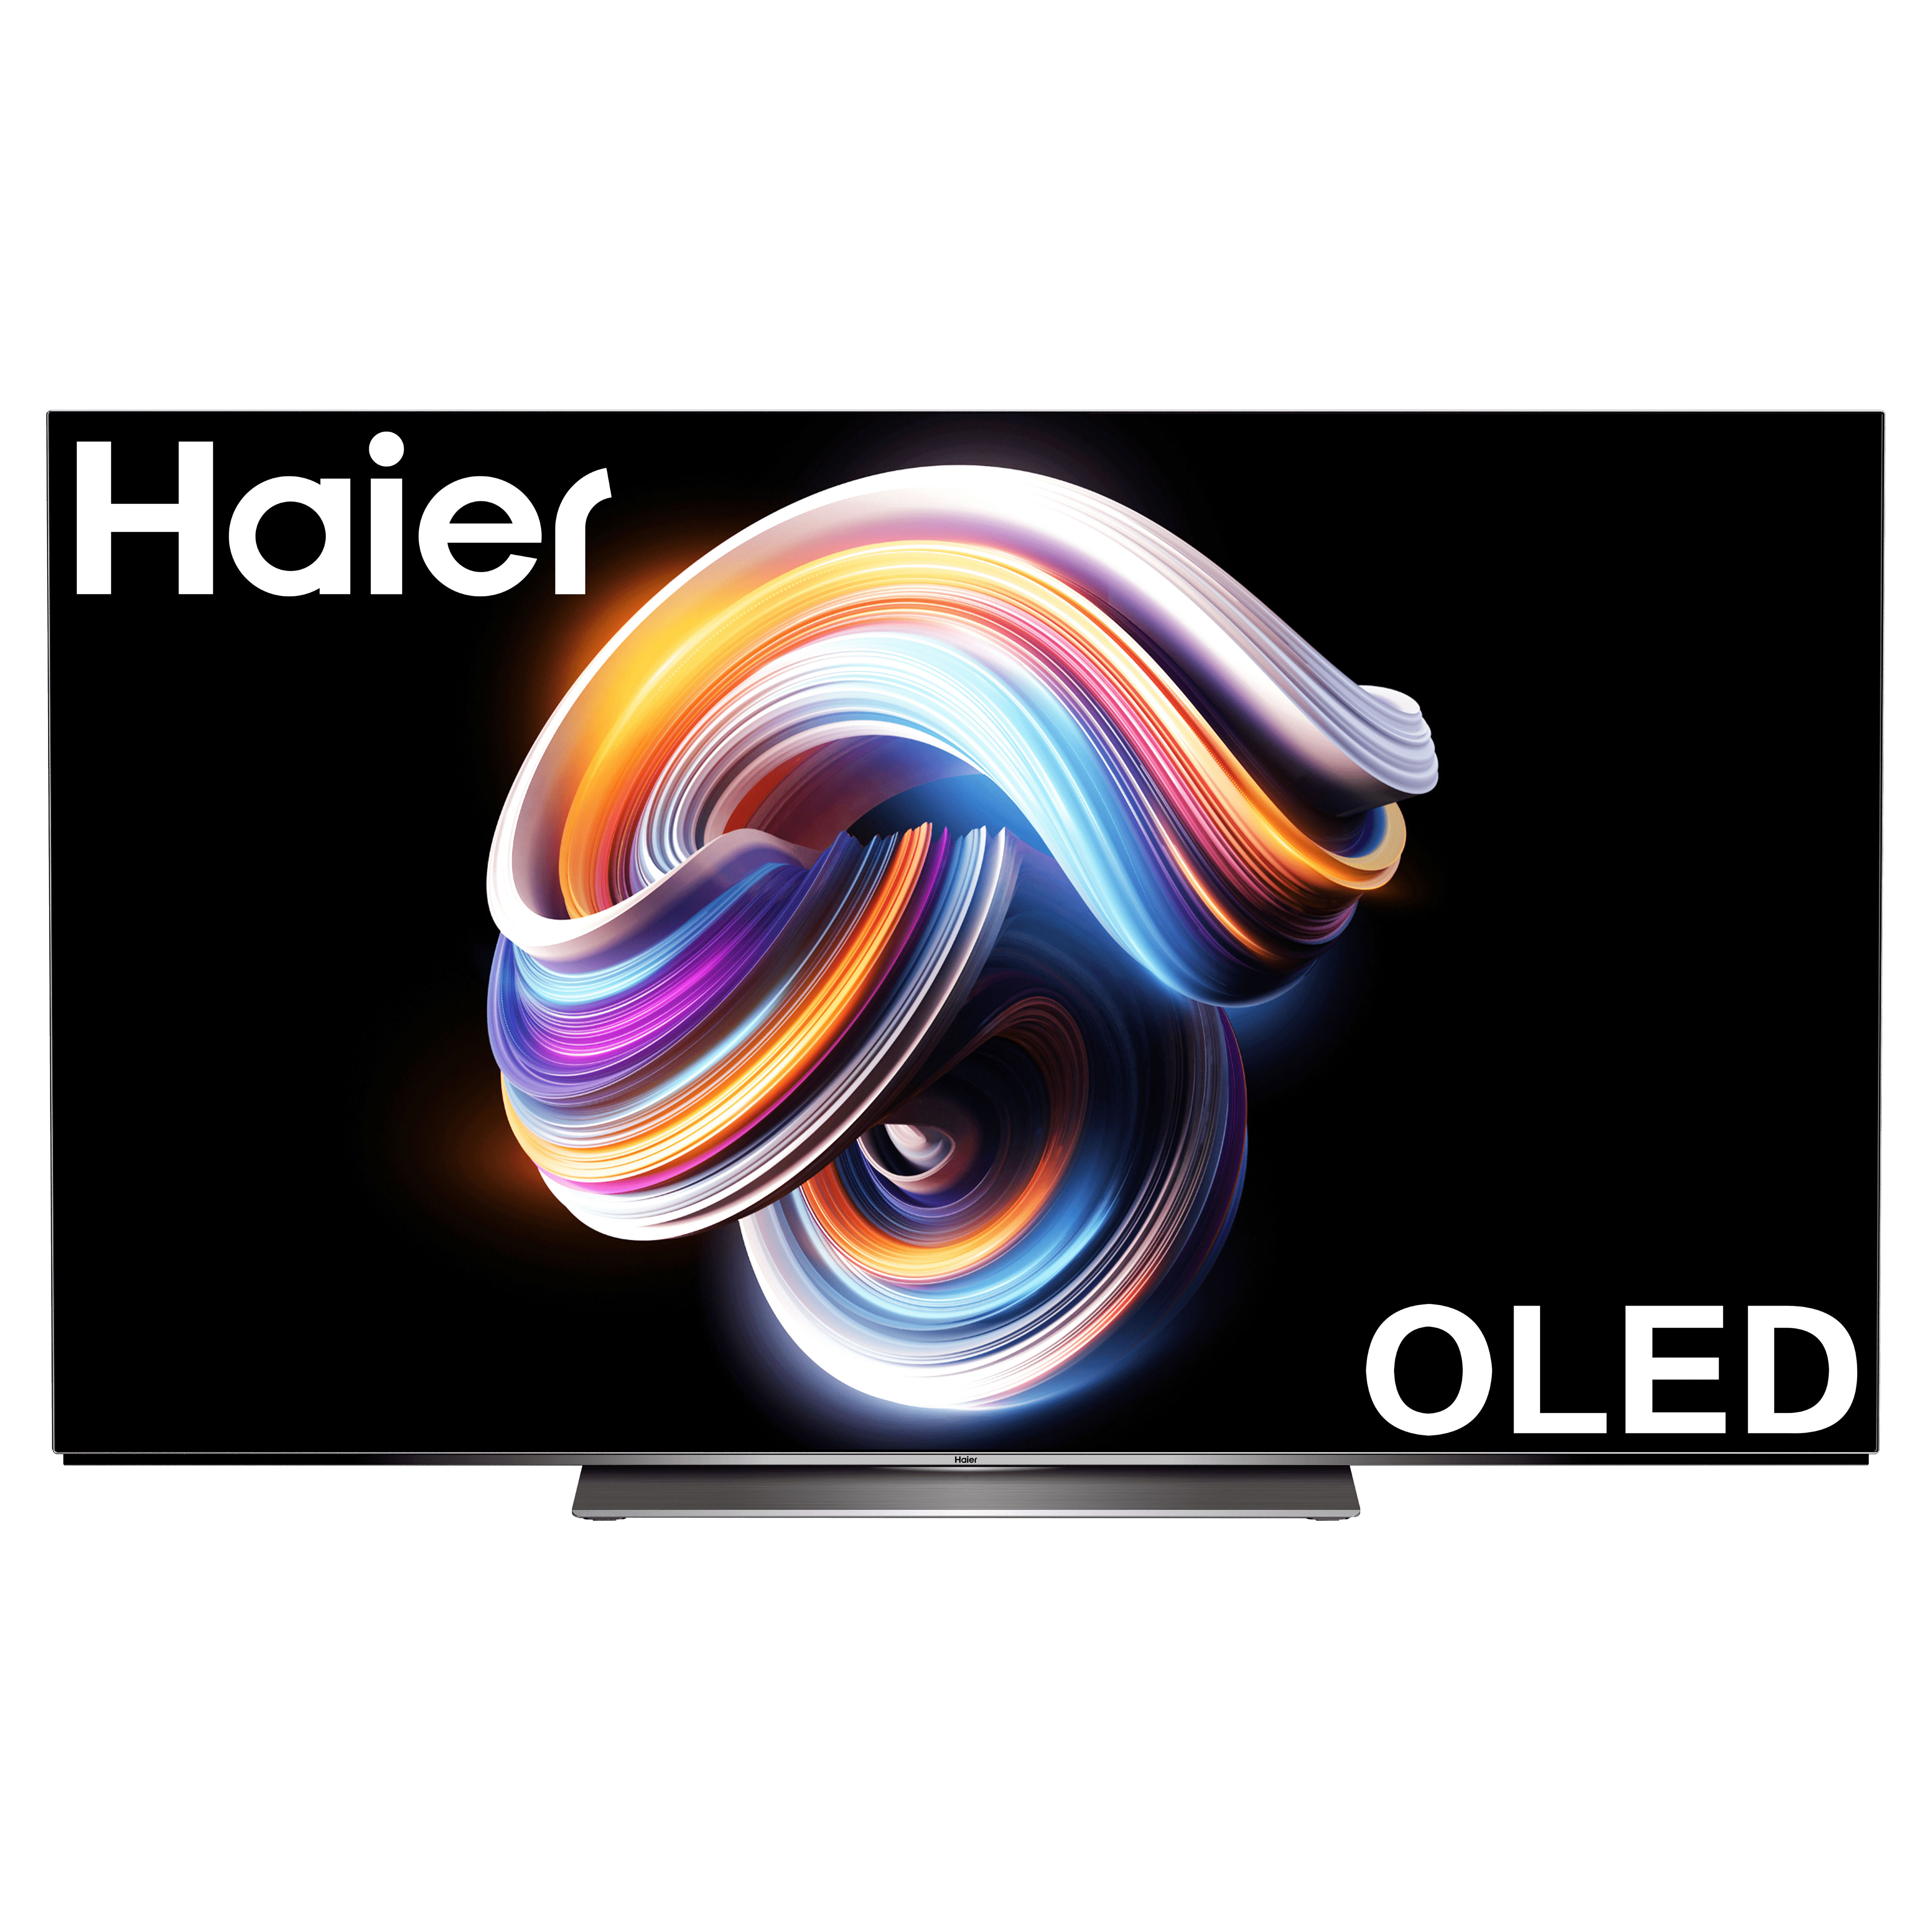 Haier oled s9 отзывы. OLED Haier h65s9ug Pro. Телевизор Haier h65s9ug Pro. Телевизор OLED Haier h65s9ug Pro. 65" Haier h65s9ug Pro.